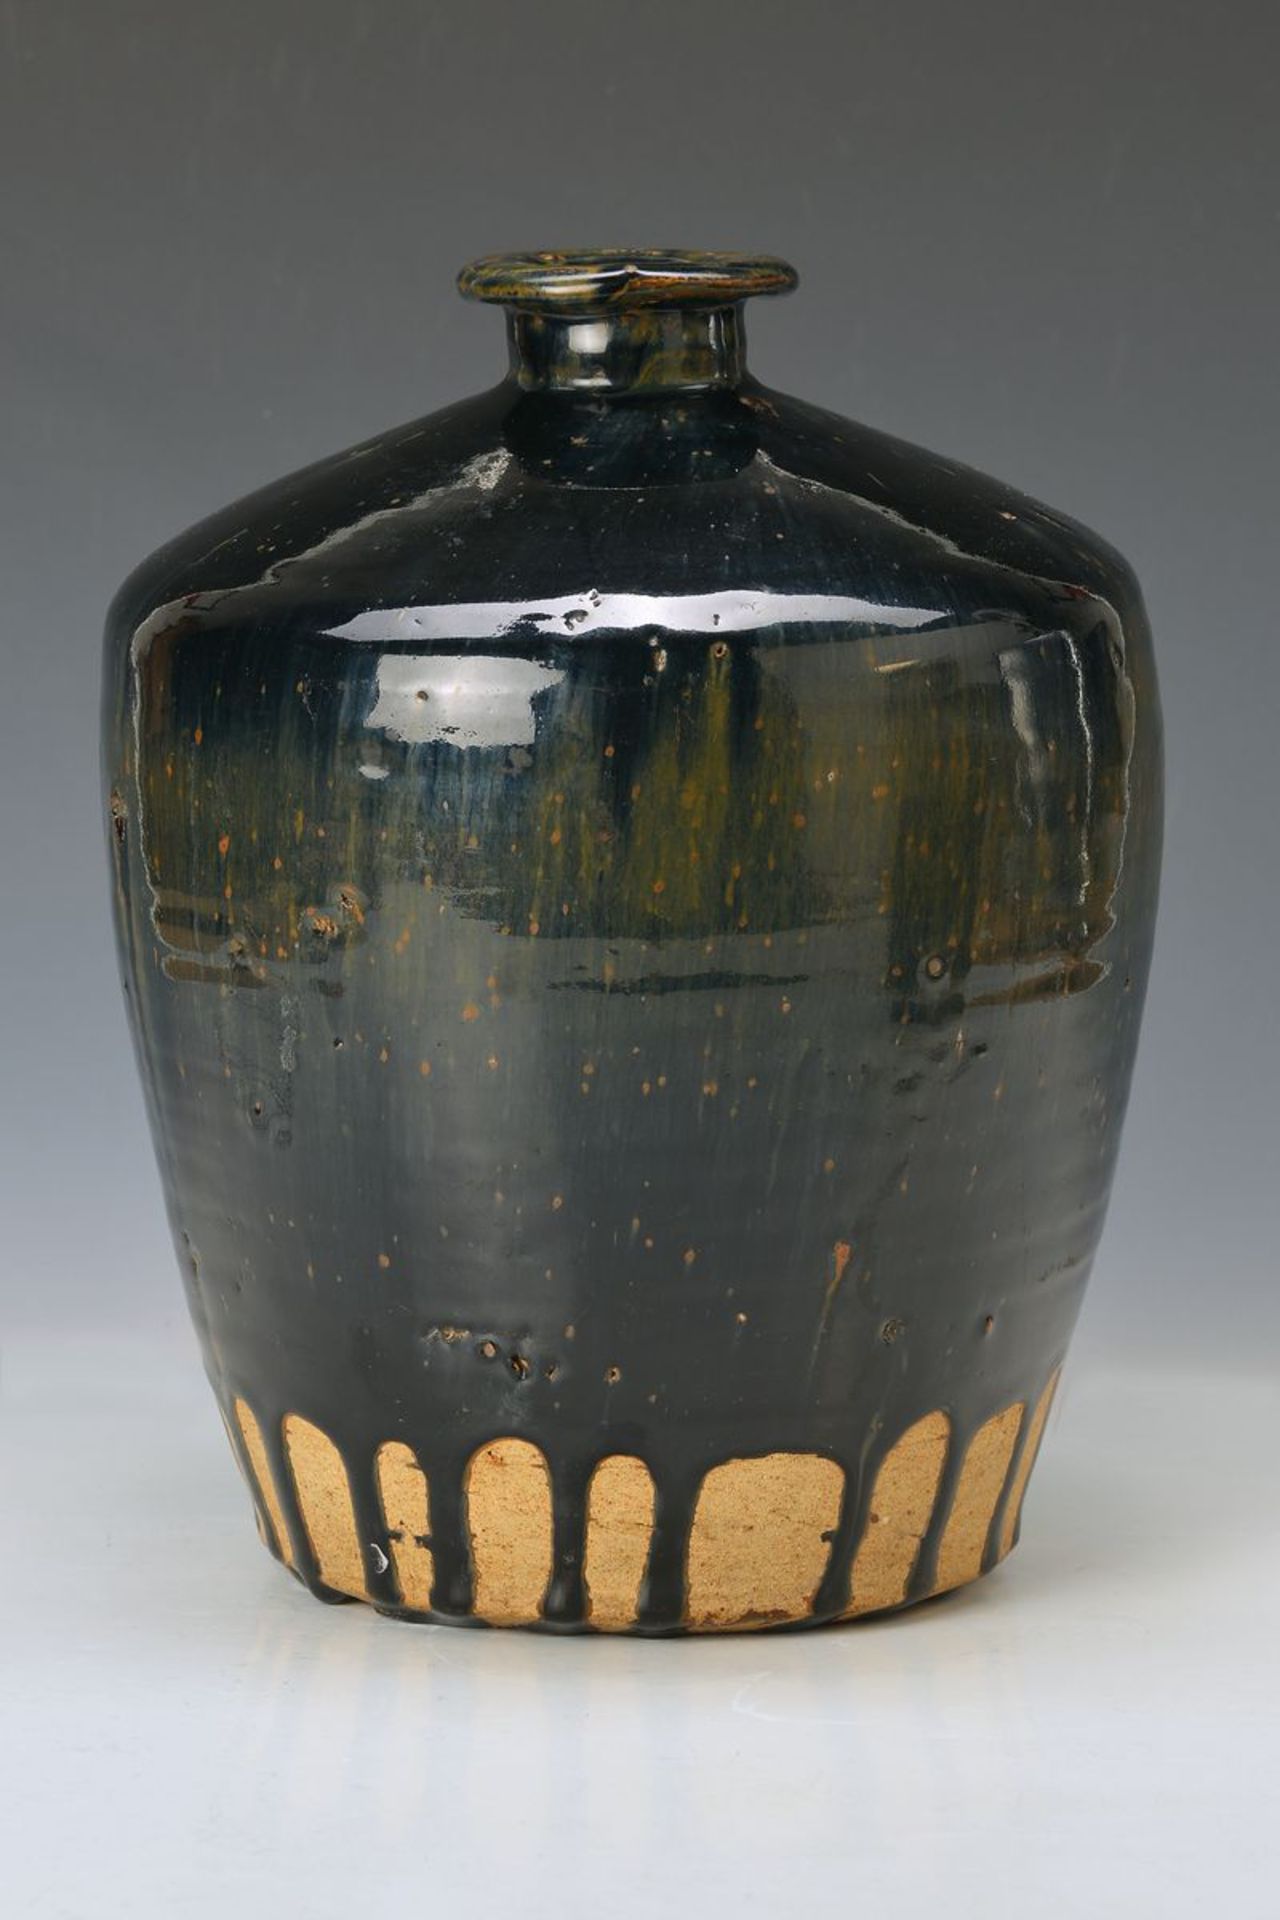 Vase, China, Anfang 20.Jh. nach Vorbild der Ming Dynastie um 1480, rötlicher Keramik- Scherben mit